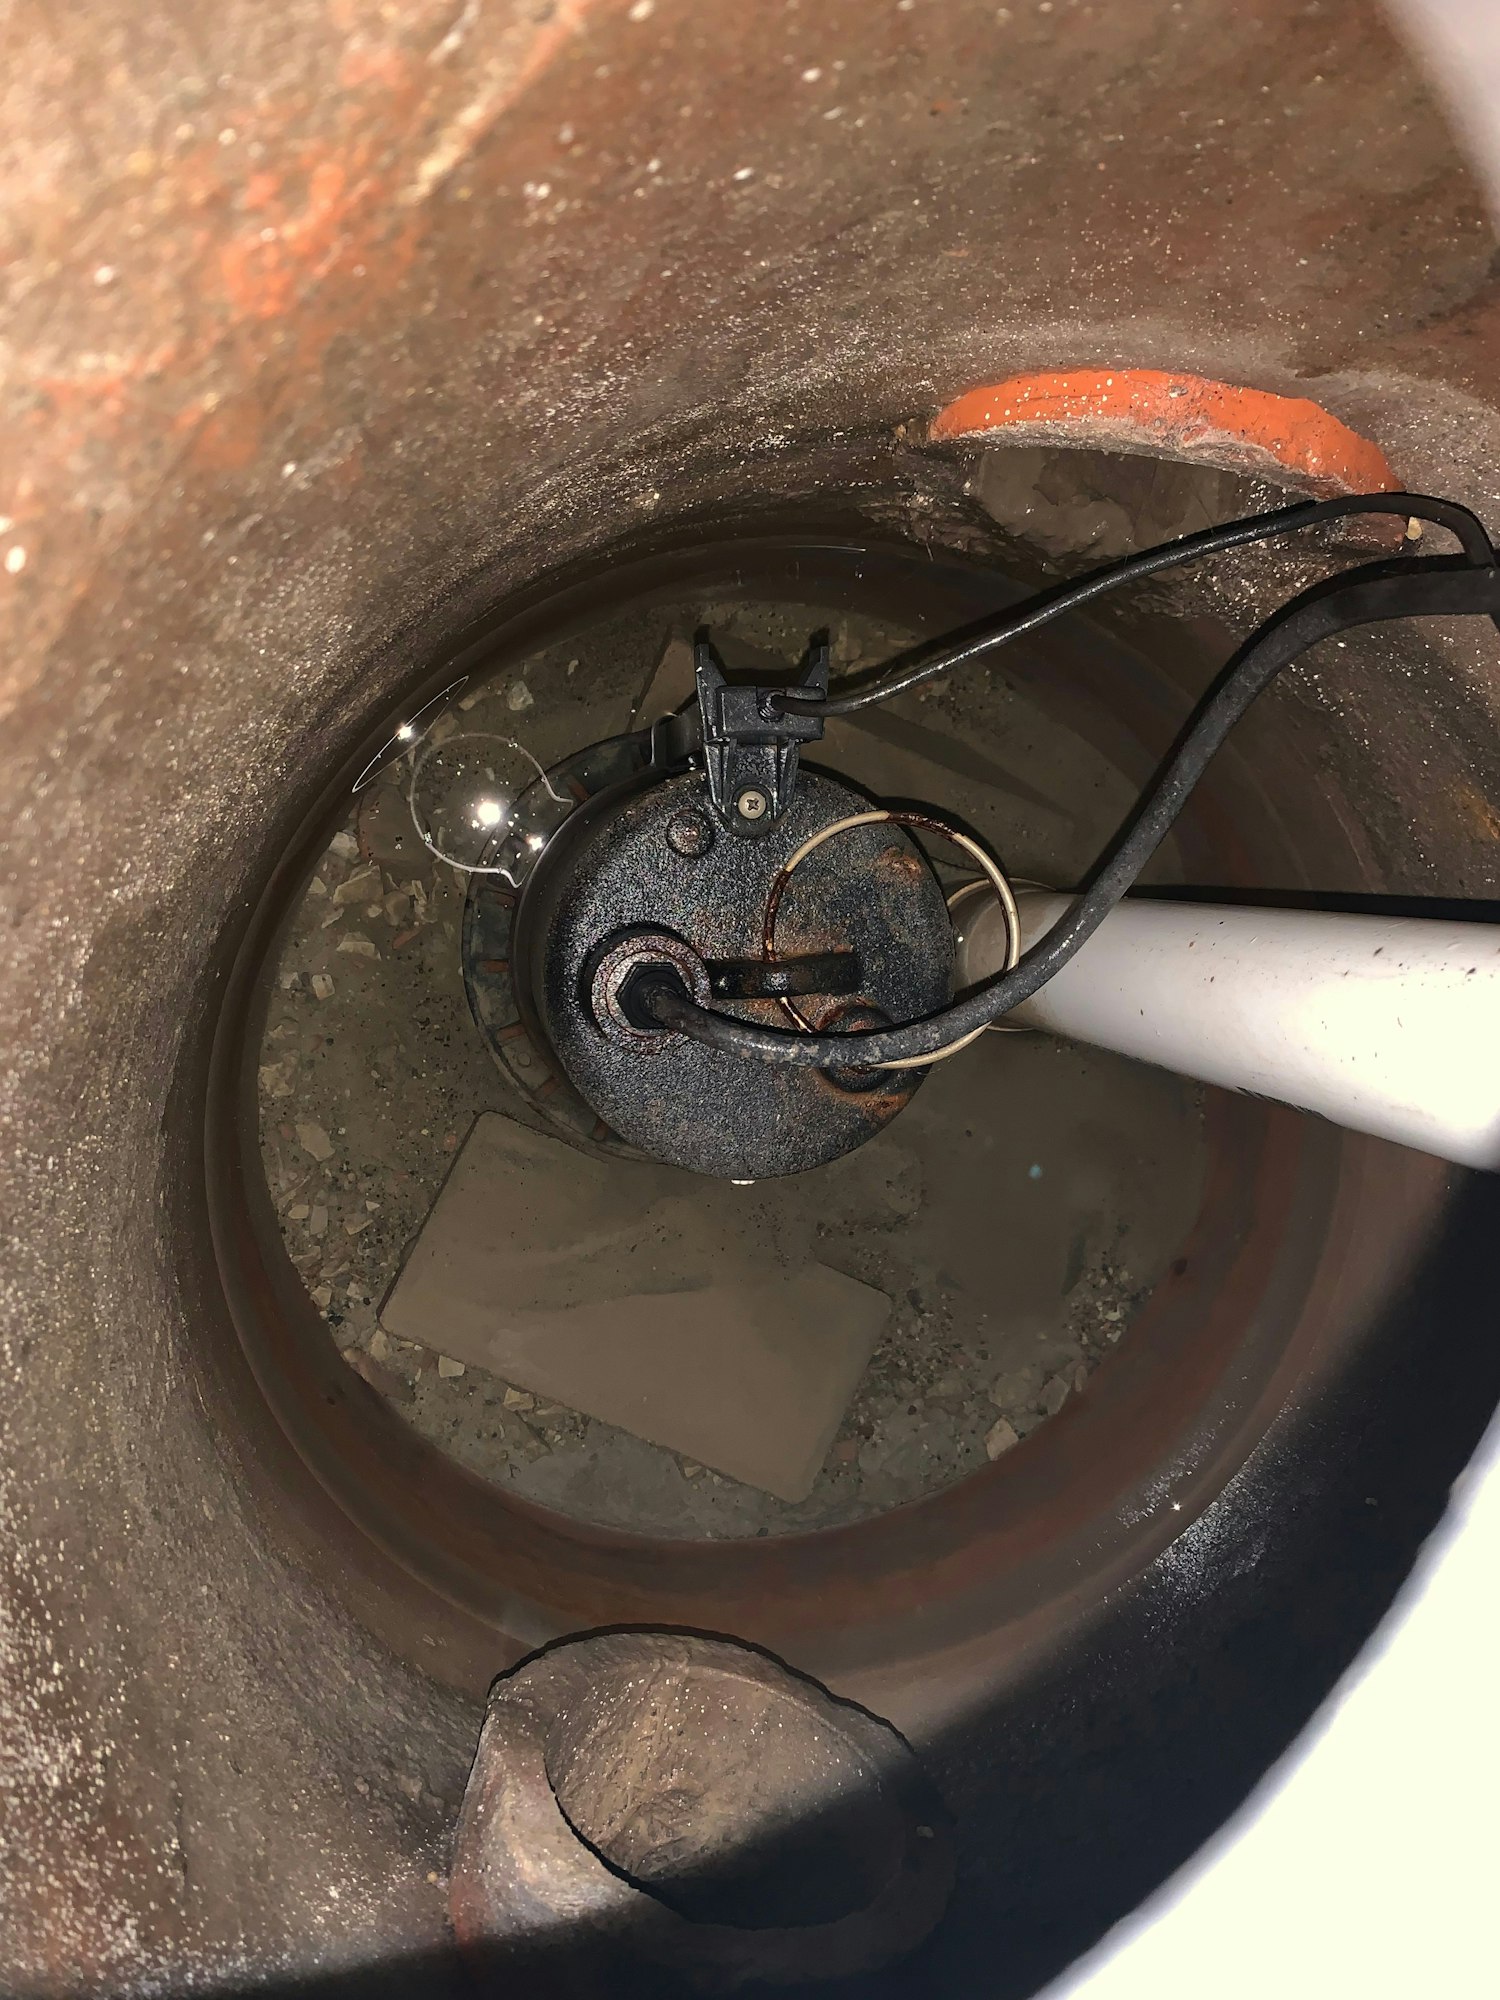 Sump pump repair in Lancaster Ca